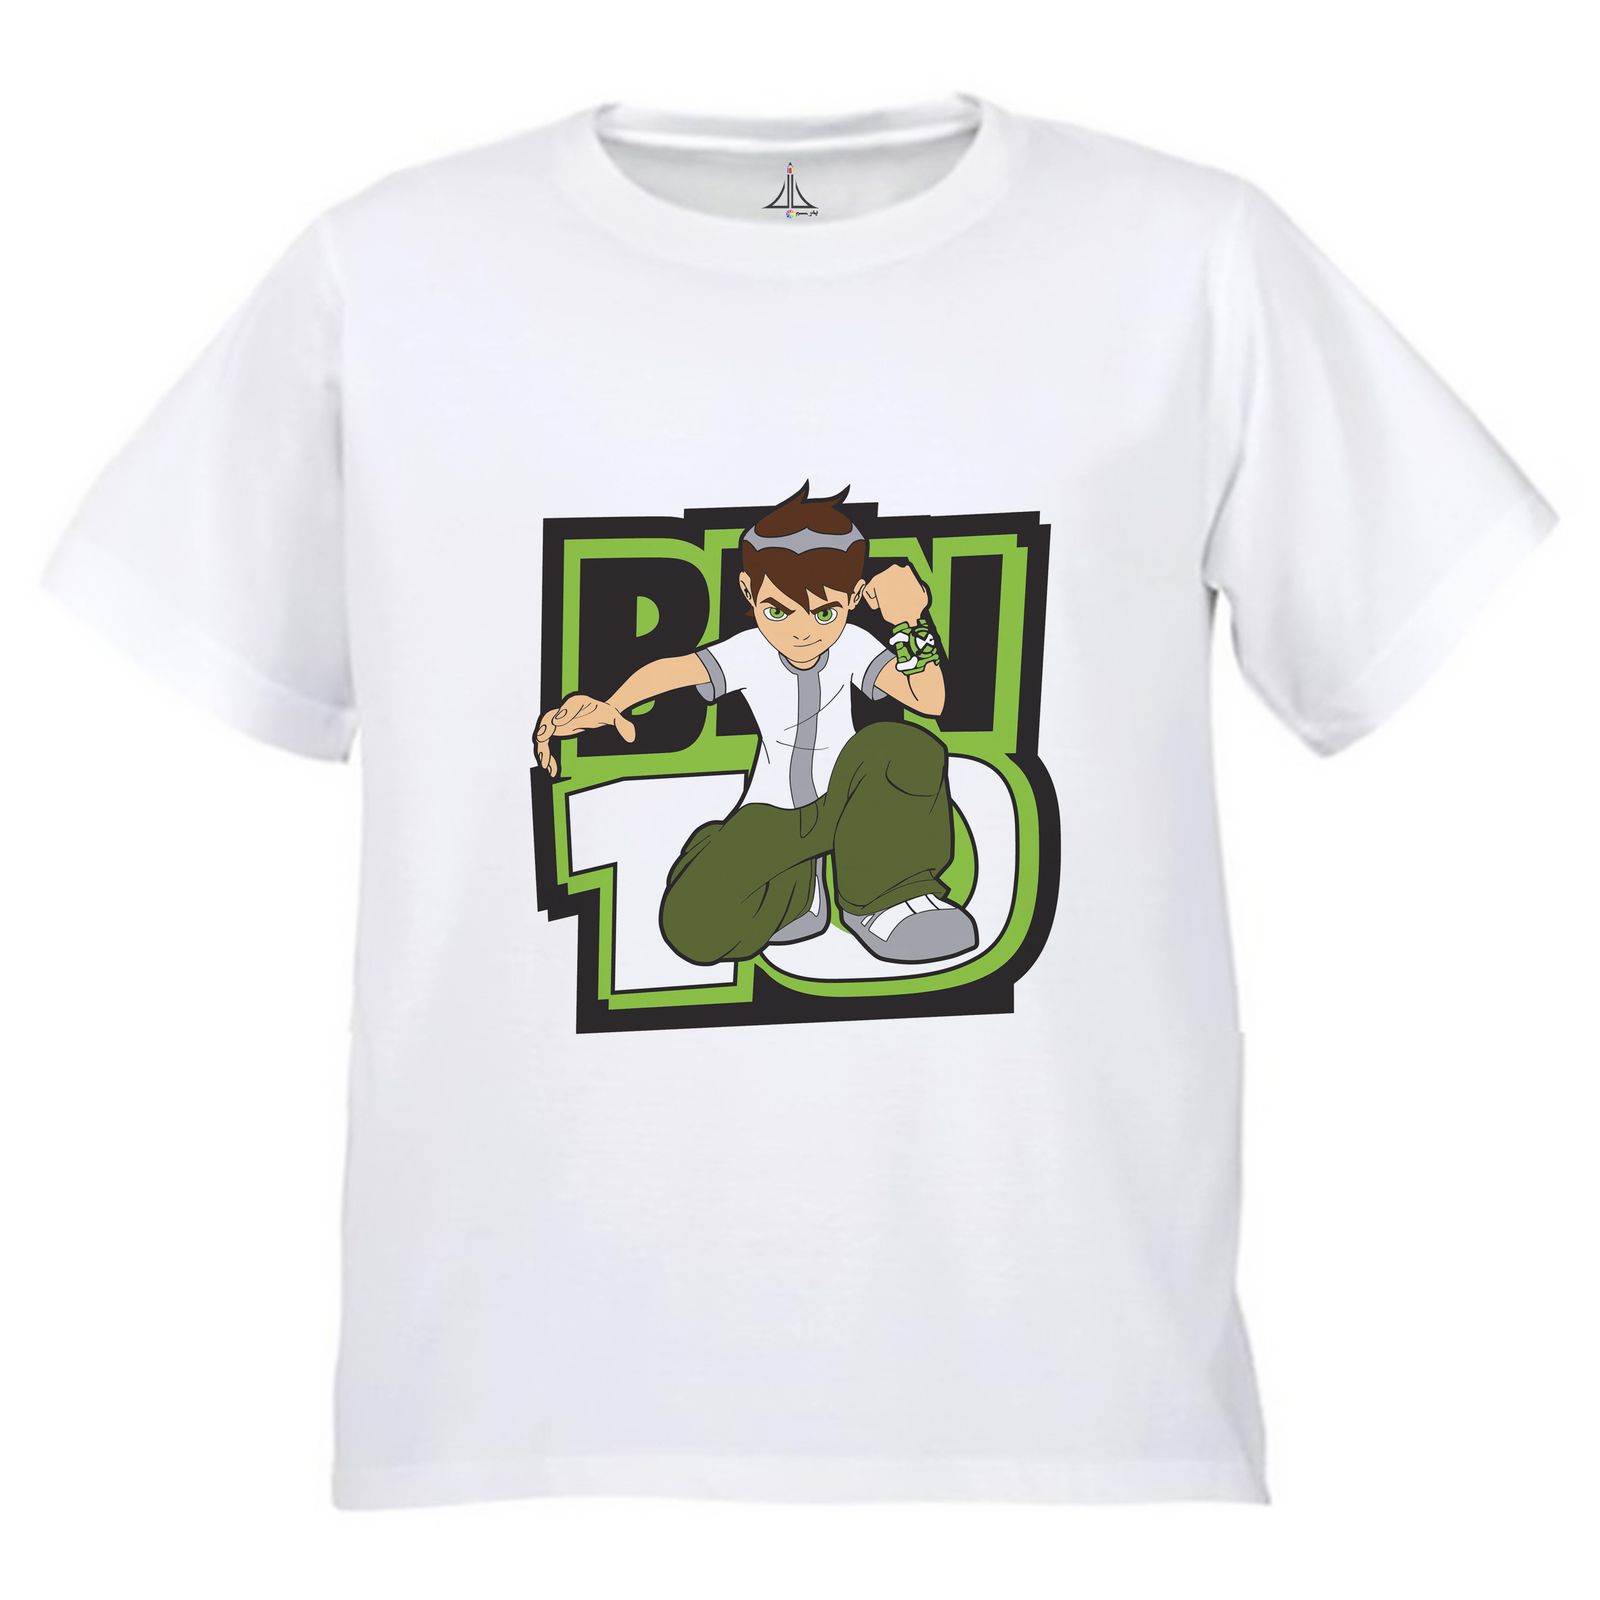 تی شرت آستین کوتاه بچگانه به رسم مدل بِن تِن کد 9937 -  - 3